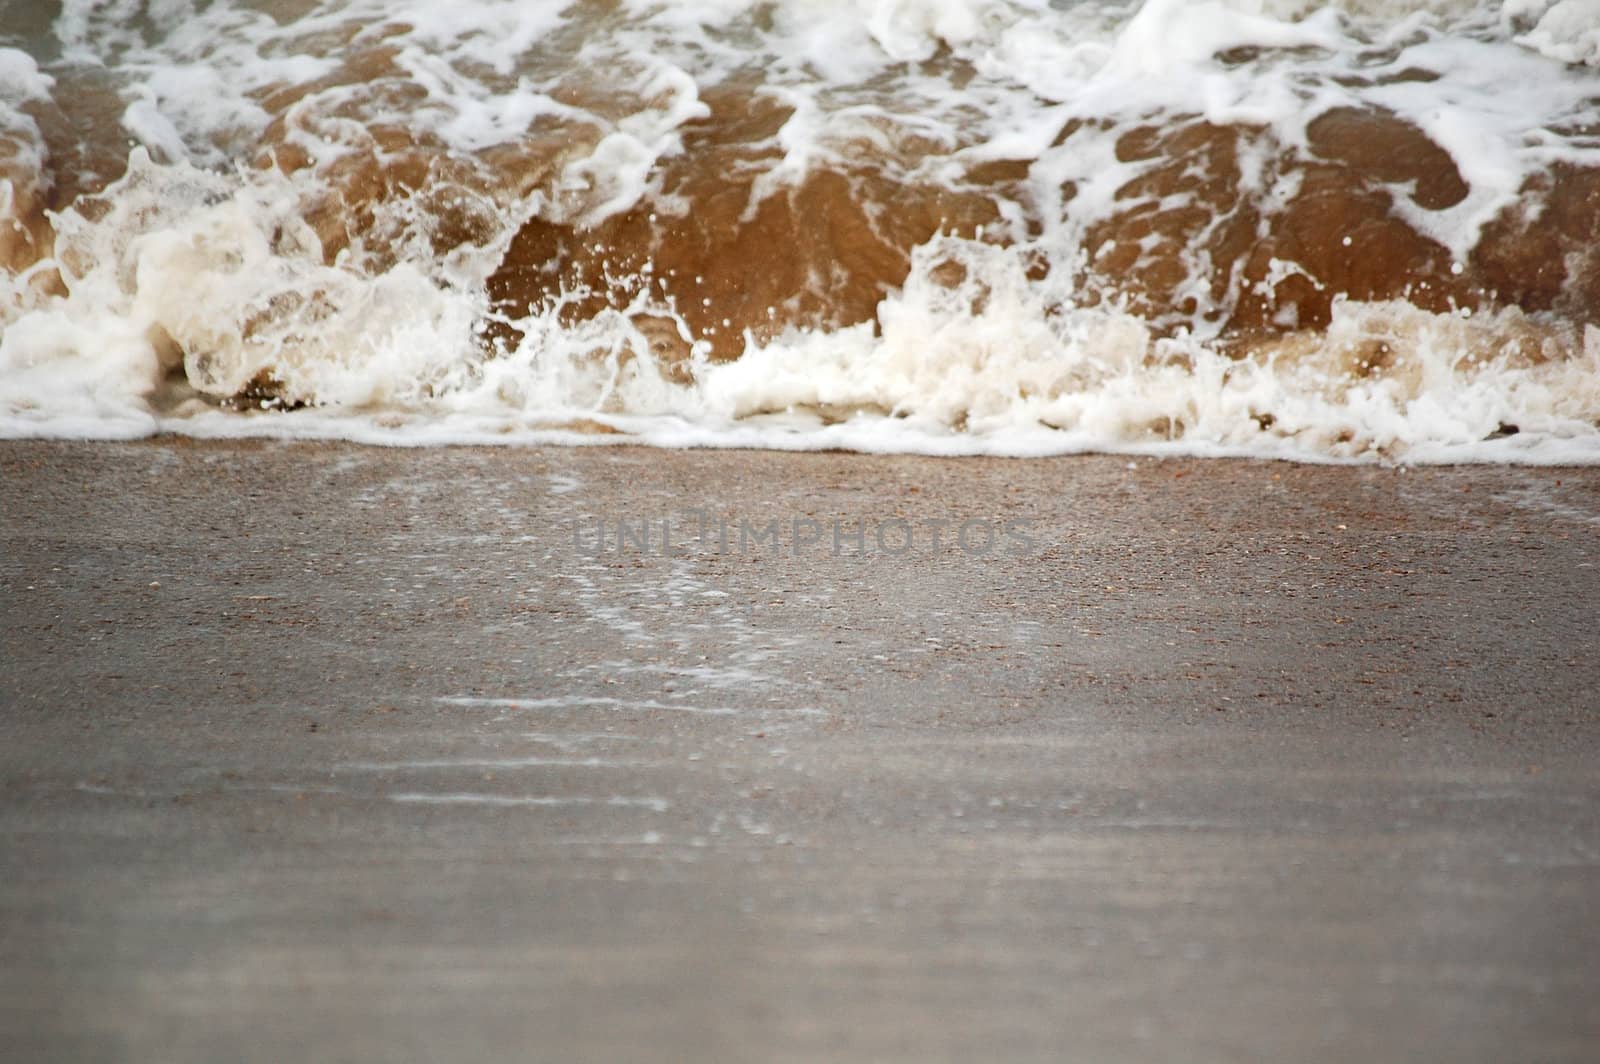 A Wave splash on sand, focus on sand